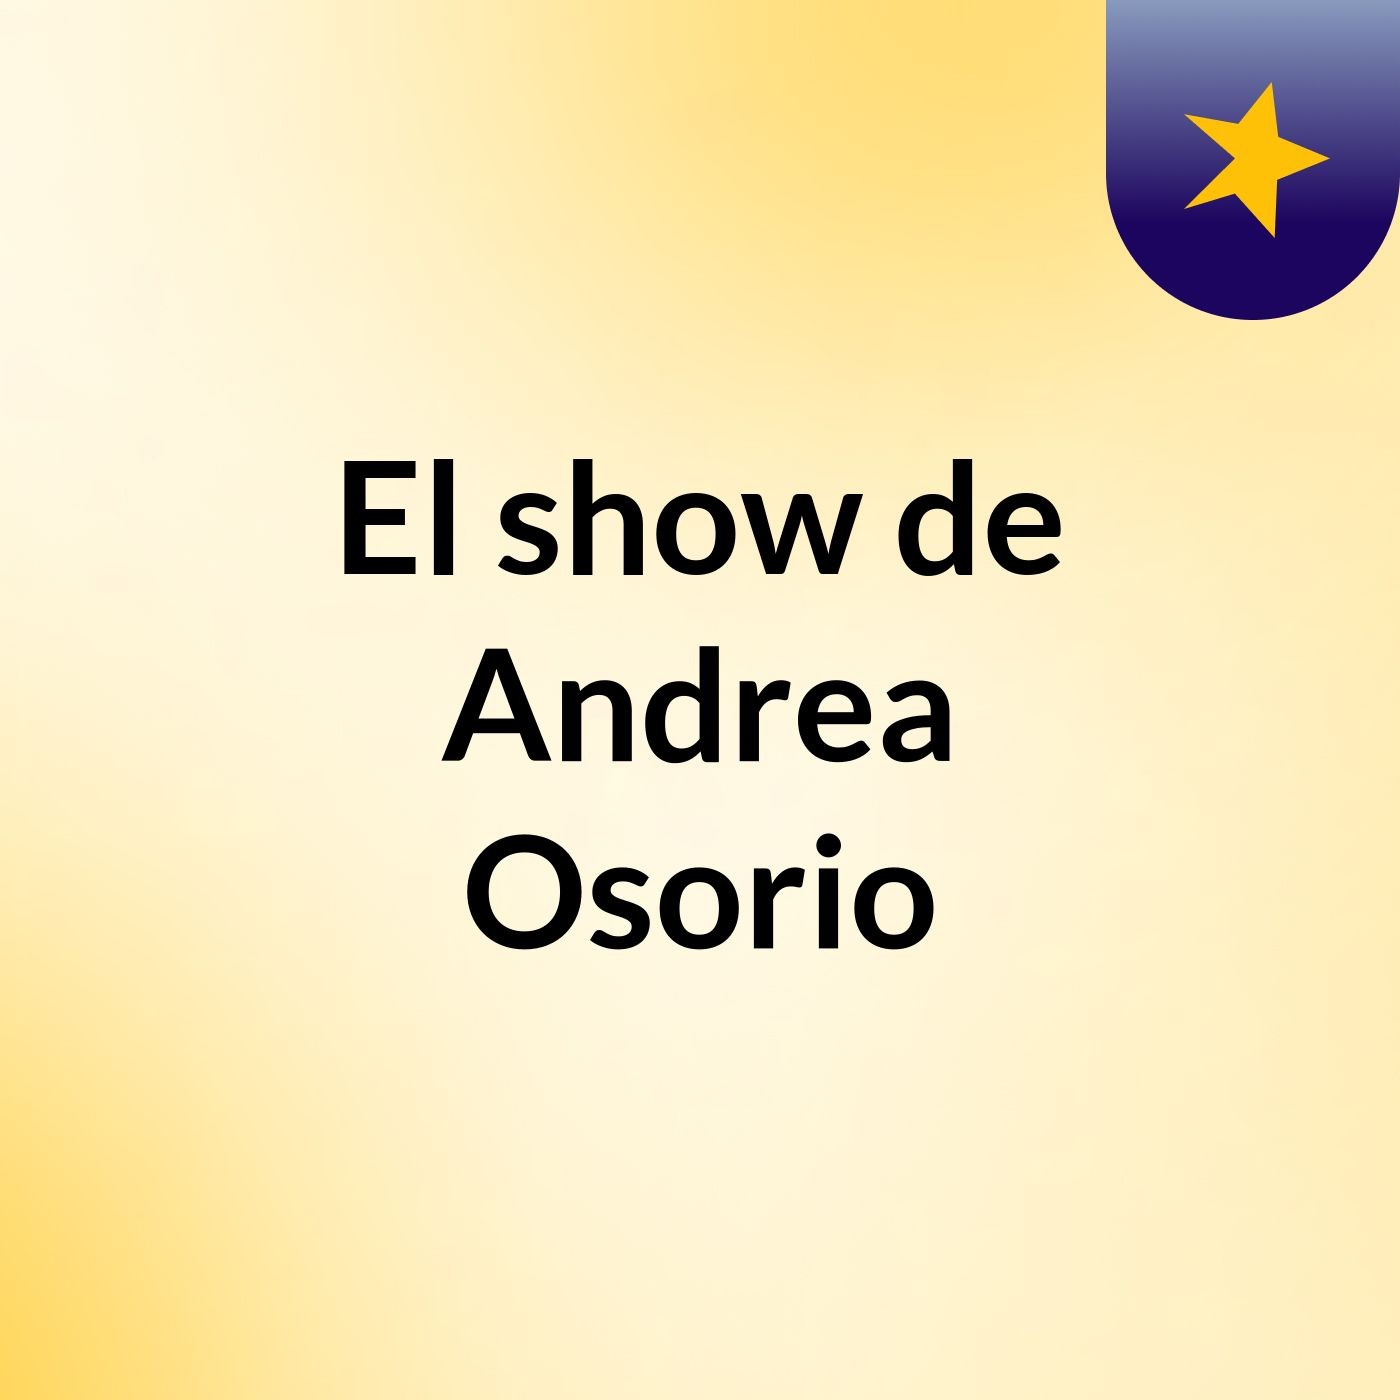 El show de Andrea Osorio